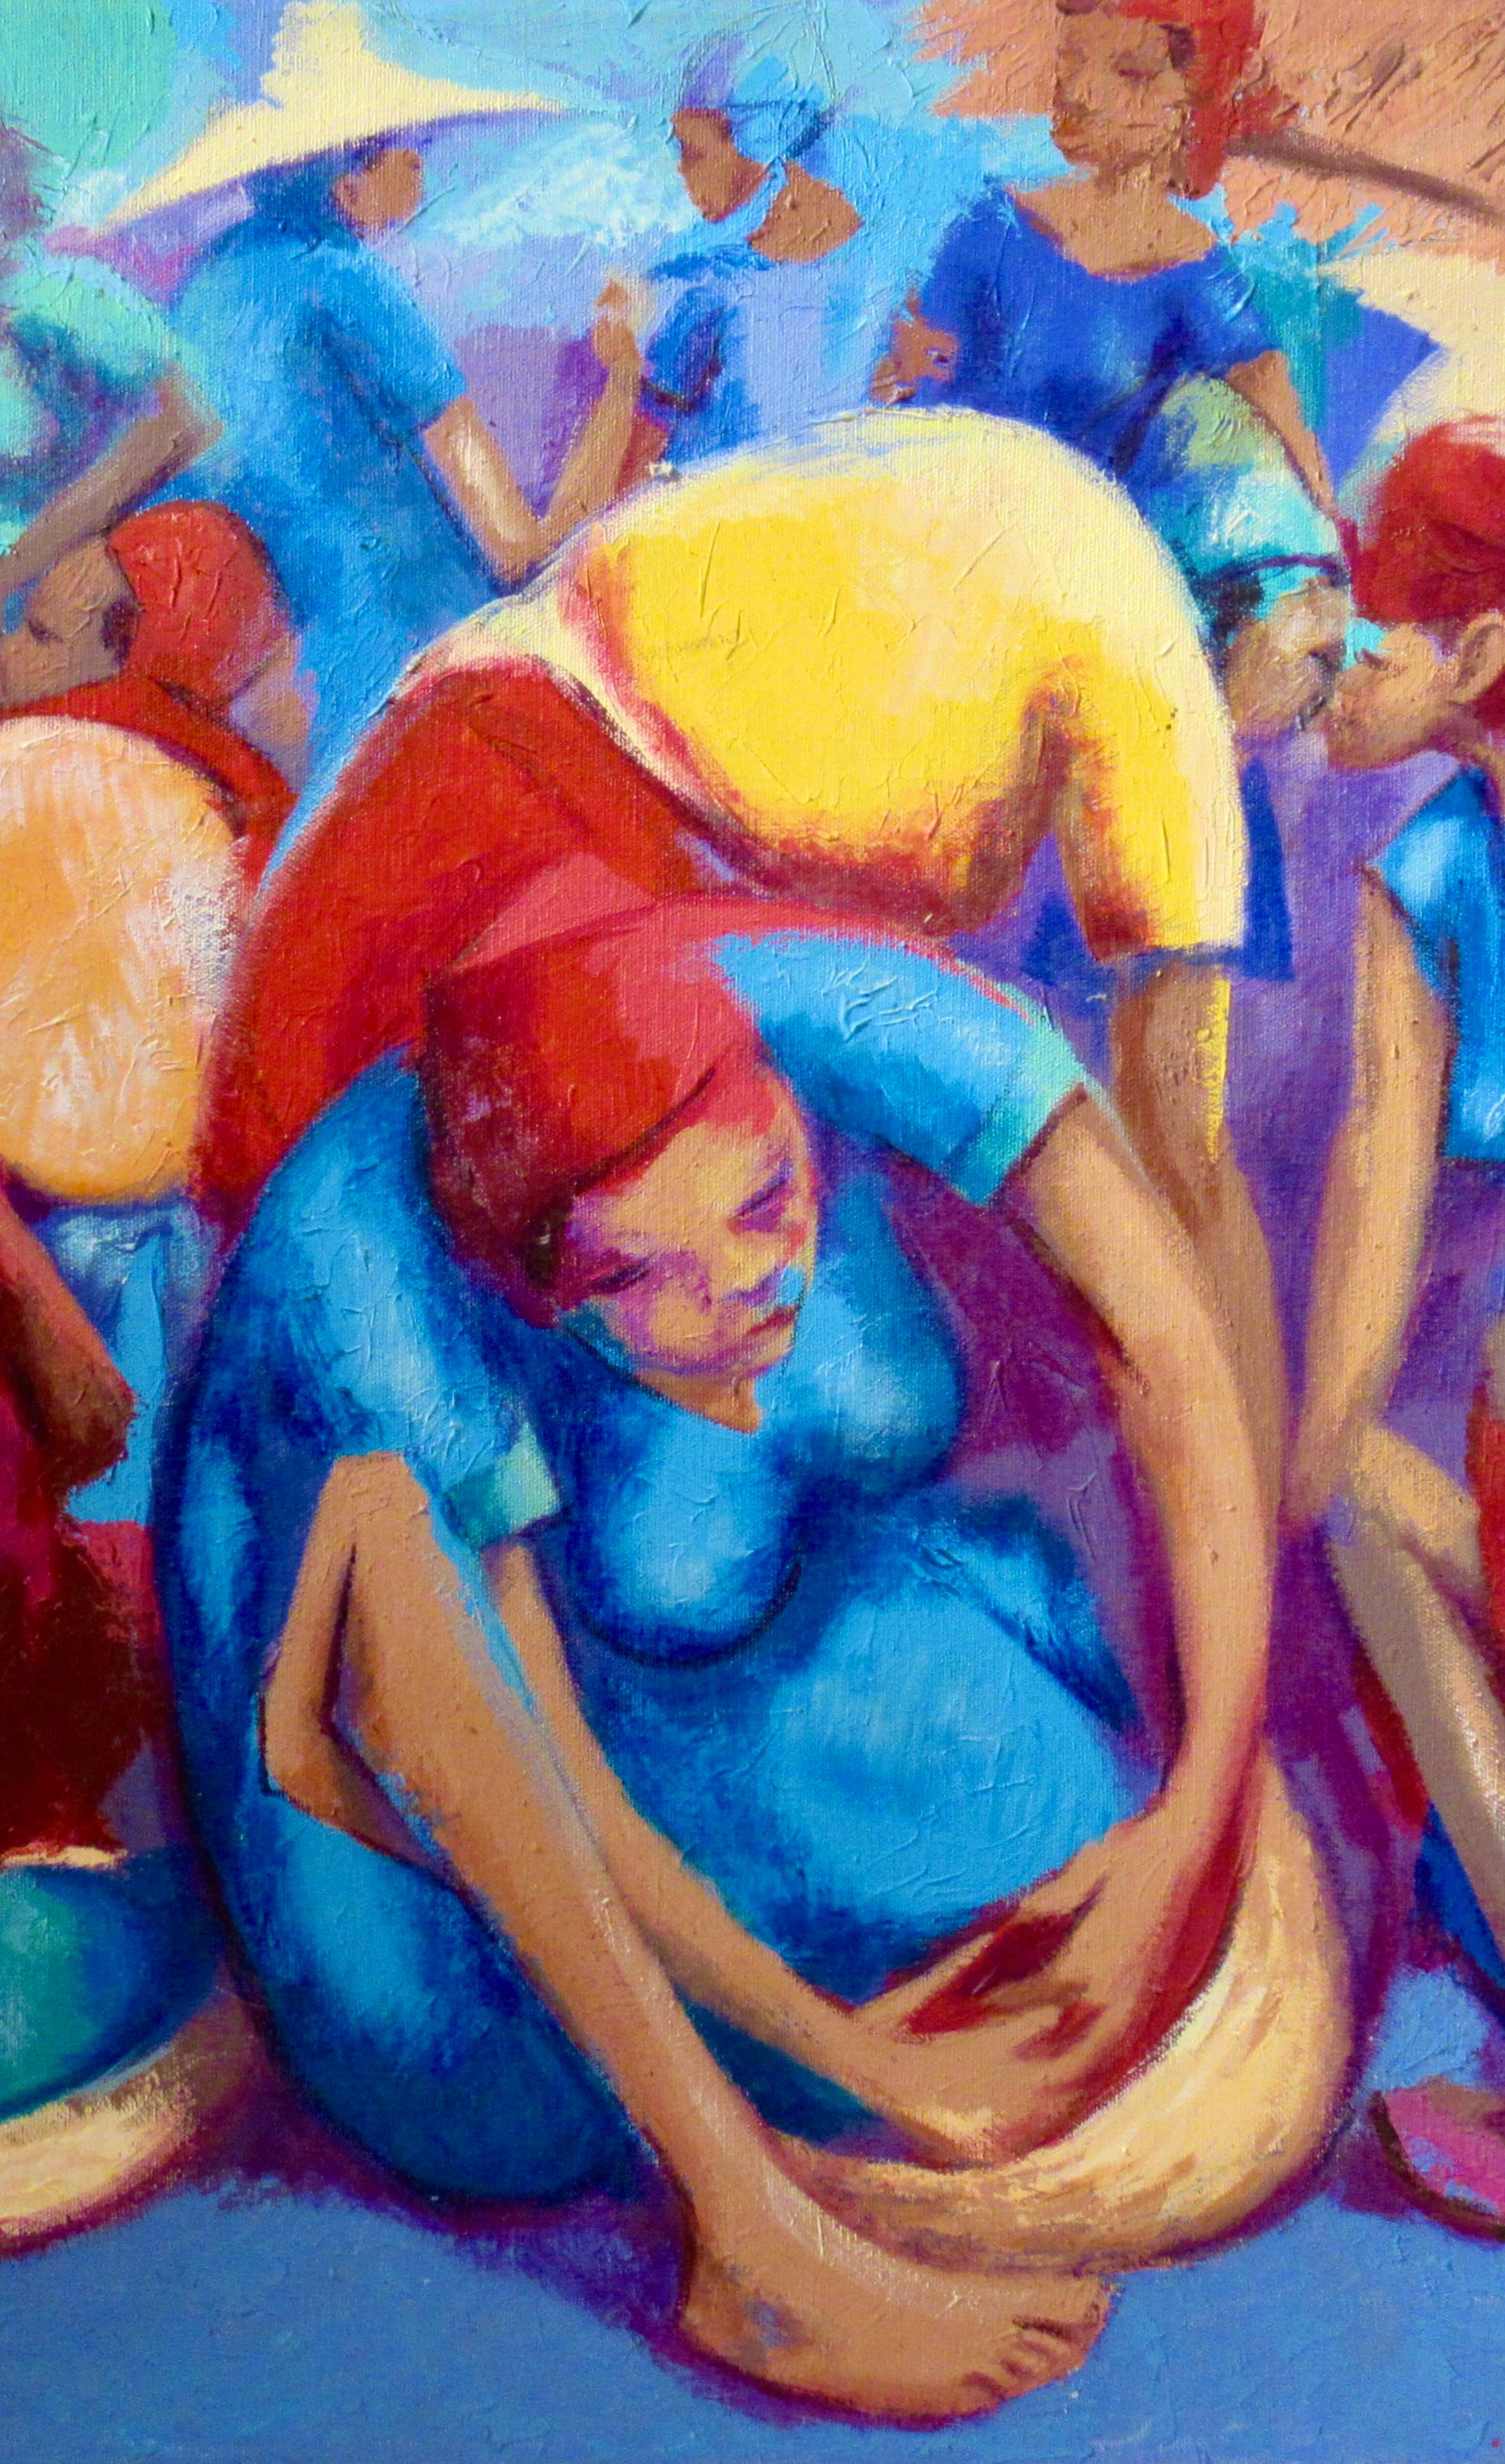 Markt-Szene – Painting von Petion Savin